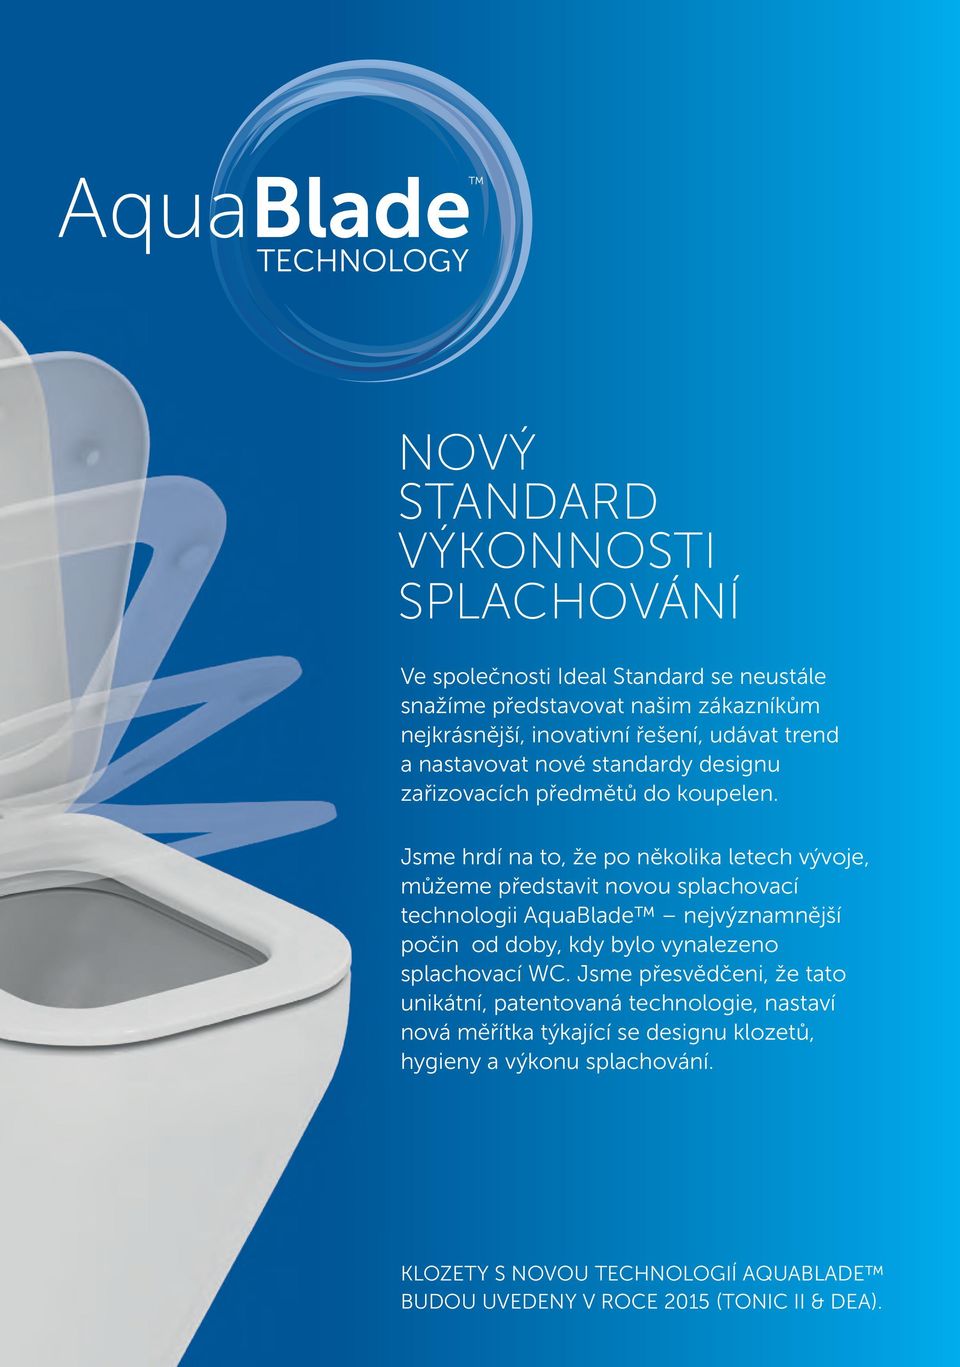 Jsme hrdí na to, že po několika letech vývoje, můžeme představit novou splachovací technologii AquaBlade nejvýznamnější počin od doby, kdy bylo vynalezeno